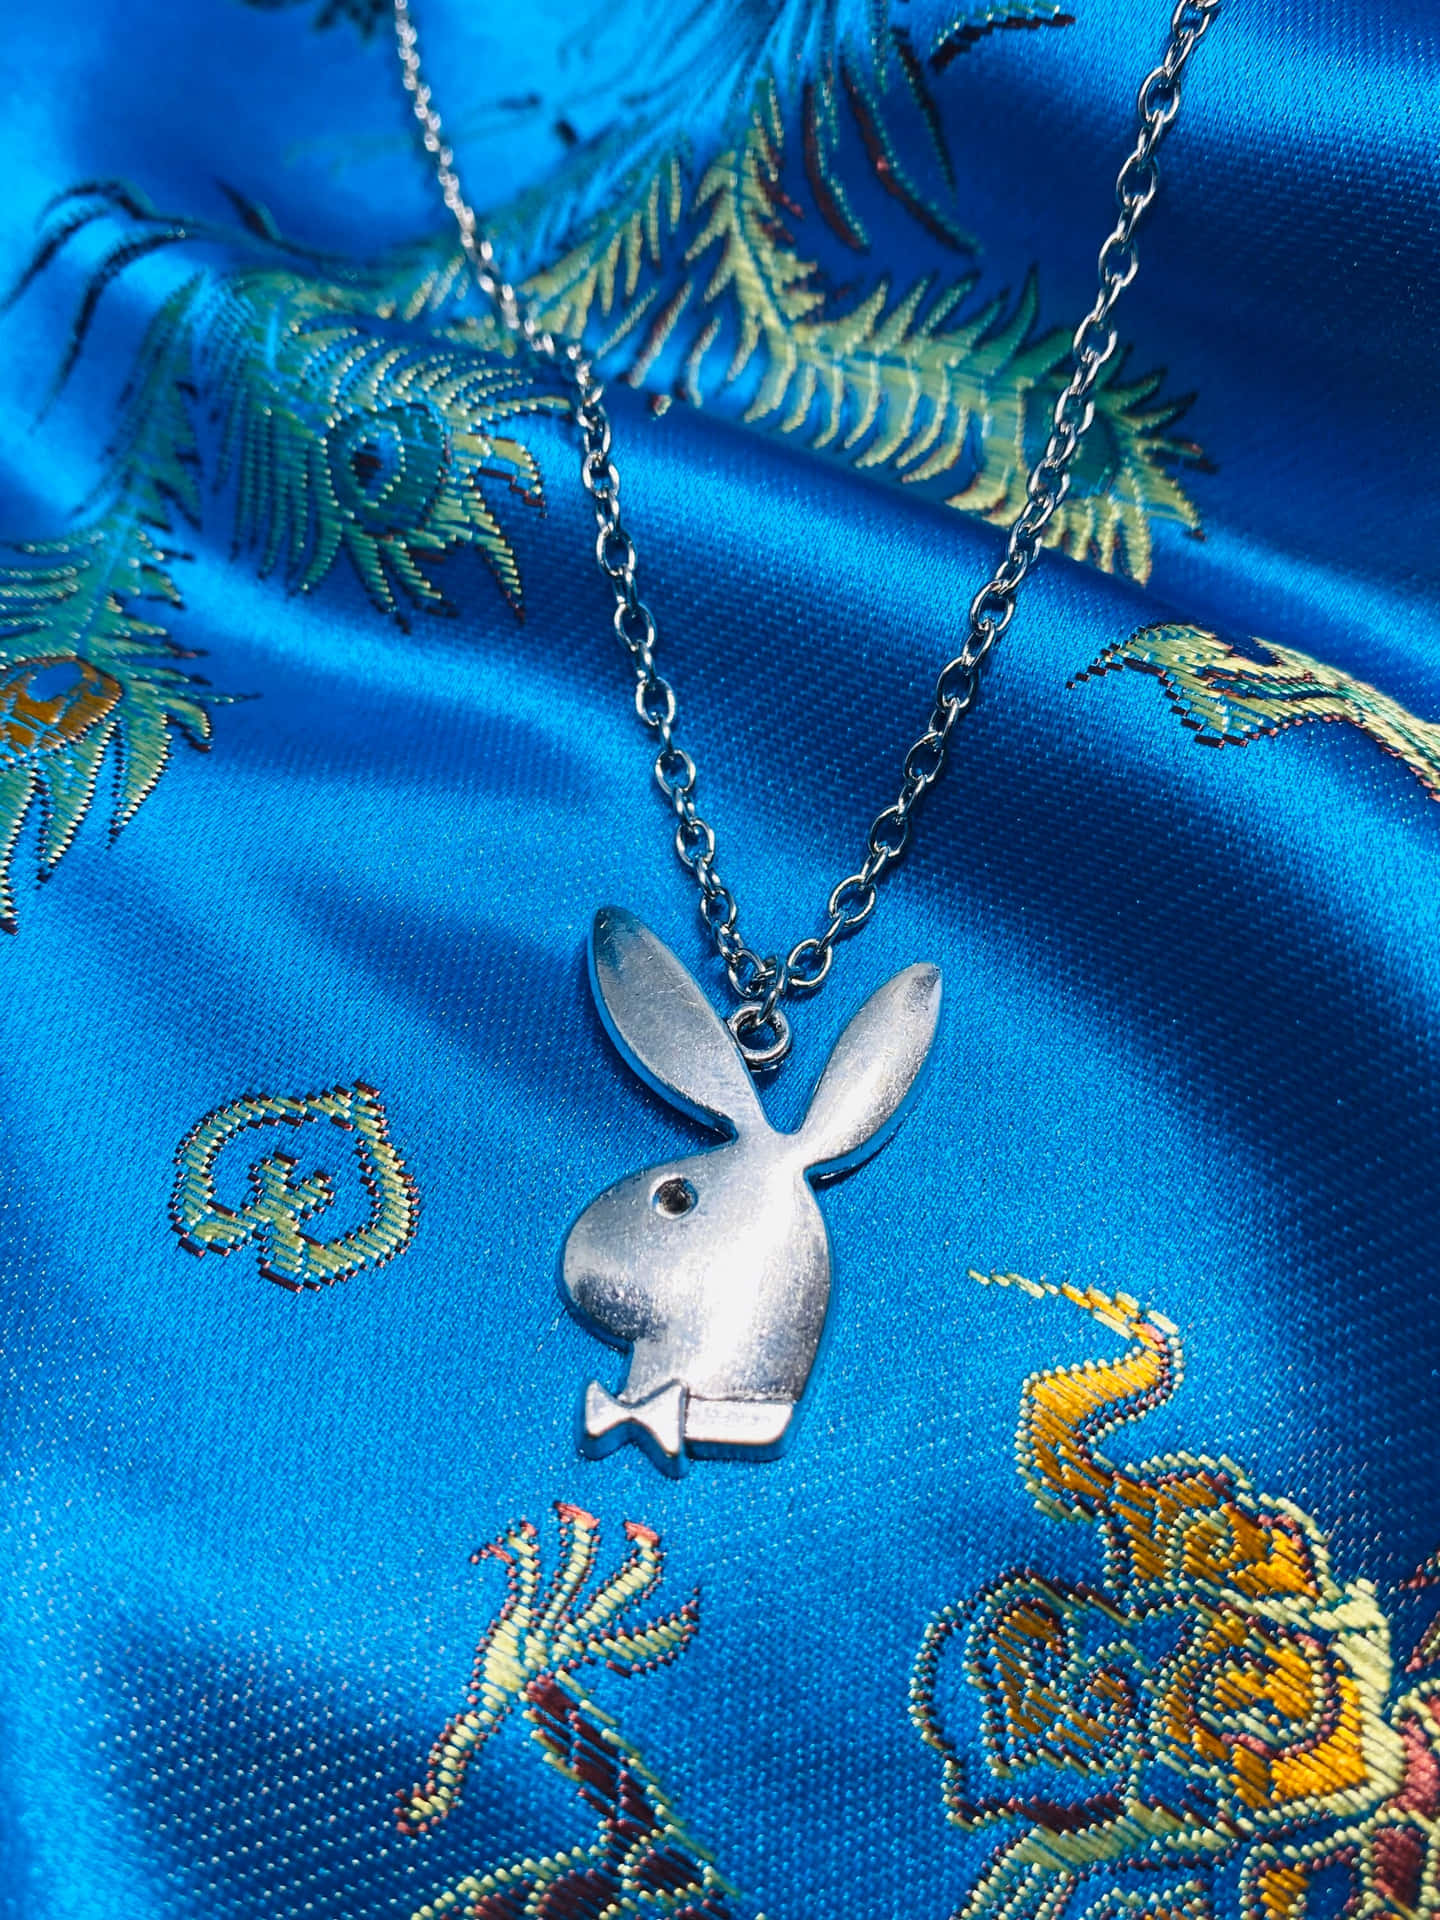 Vivil'iconico Stile Di Vita Delle Playboy Bunny.